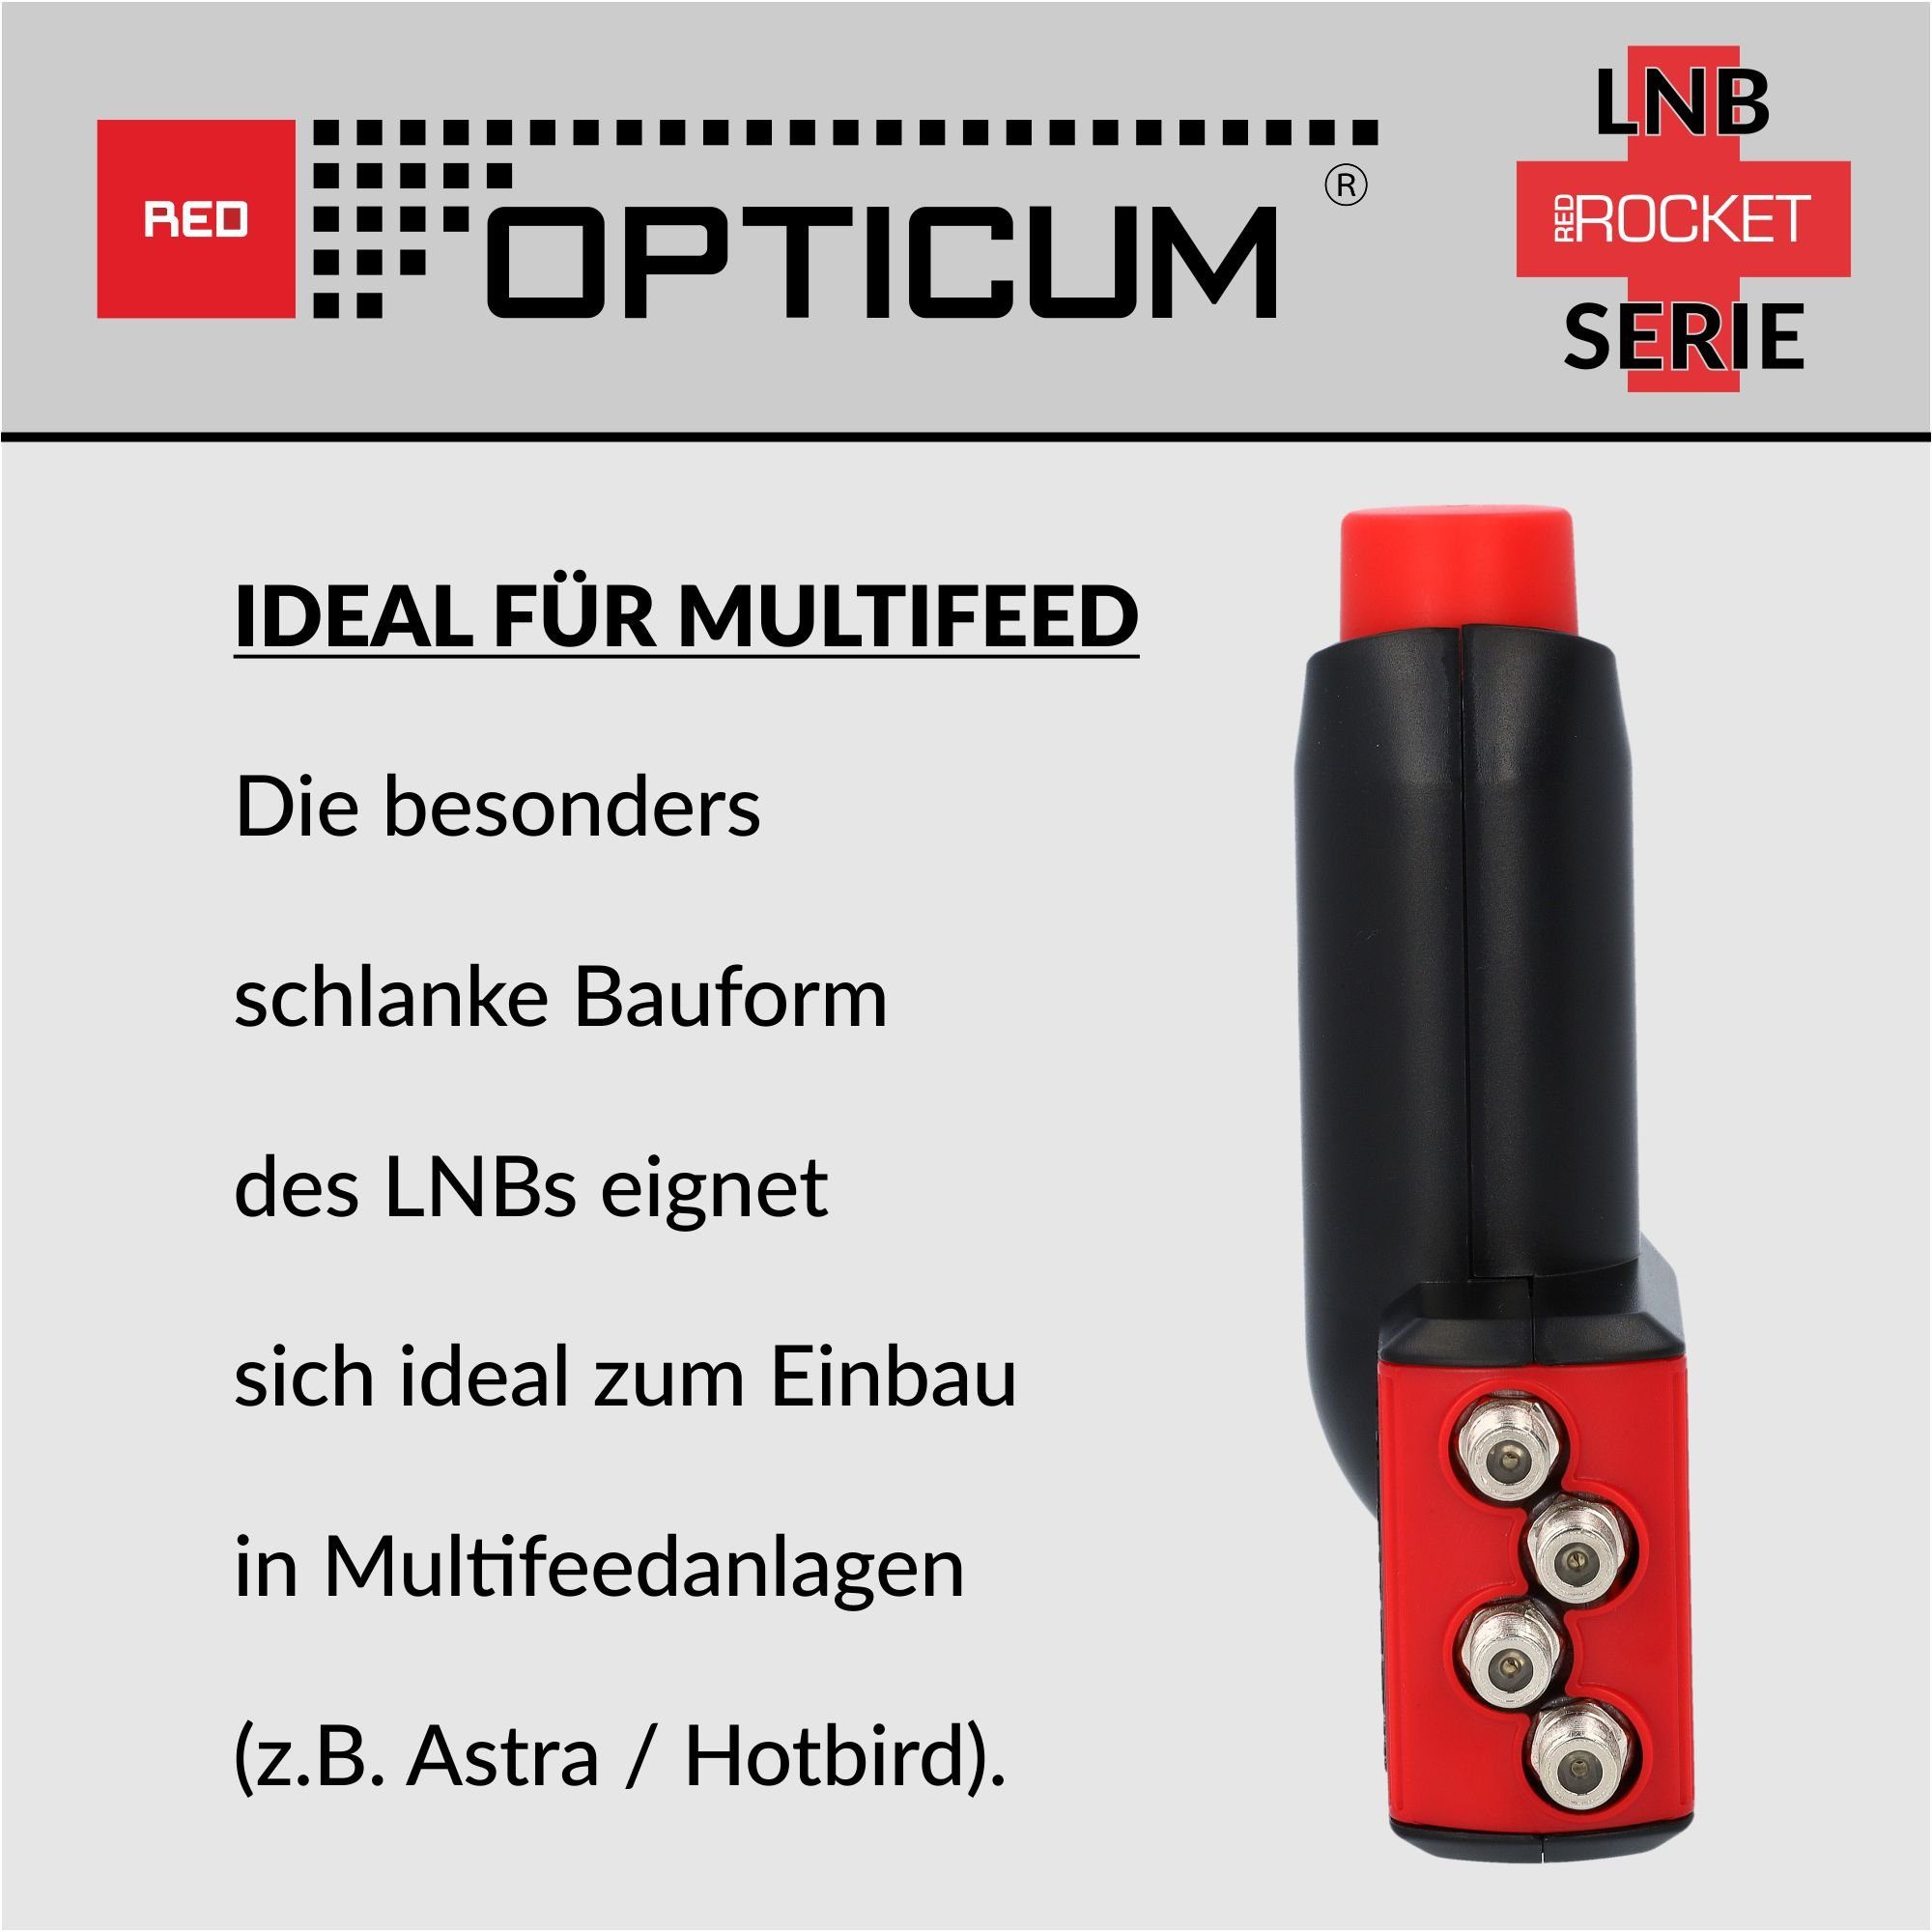 optimal kältebeständig, (Hitze- LNB Rocket - 0.1dB LQP-06H RED für Rauschmaß Red Quad Multifeedhalter) Universal-Quad-LNB & OPTICUM